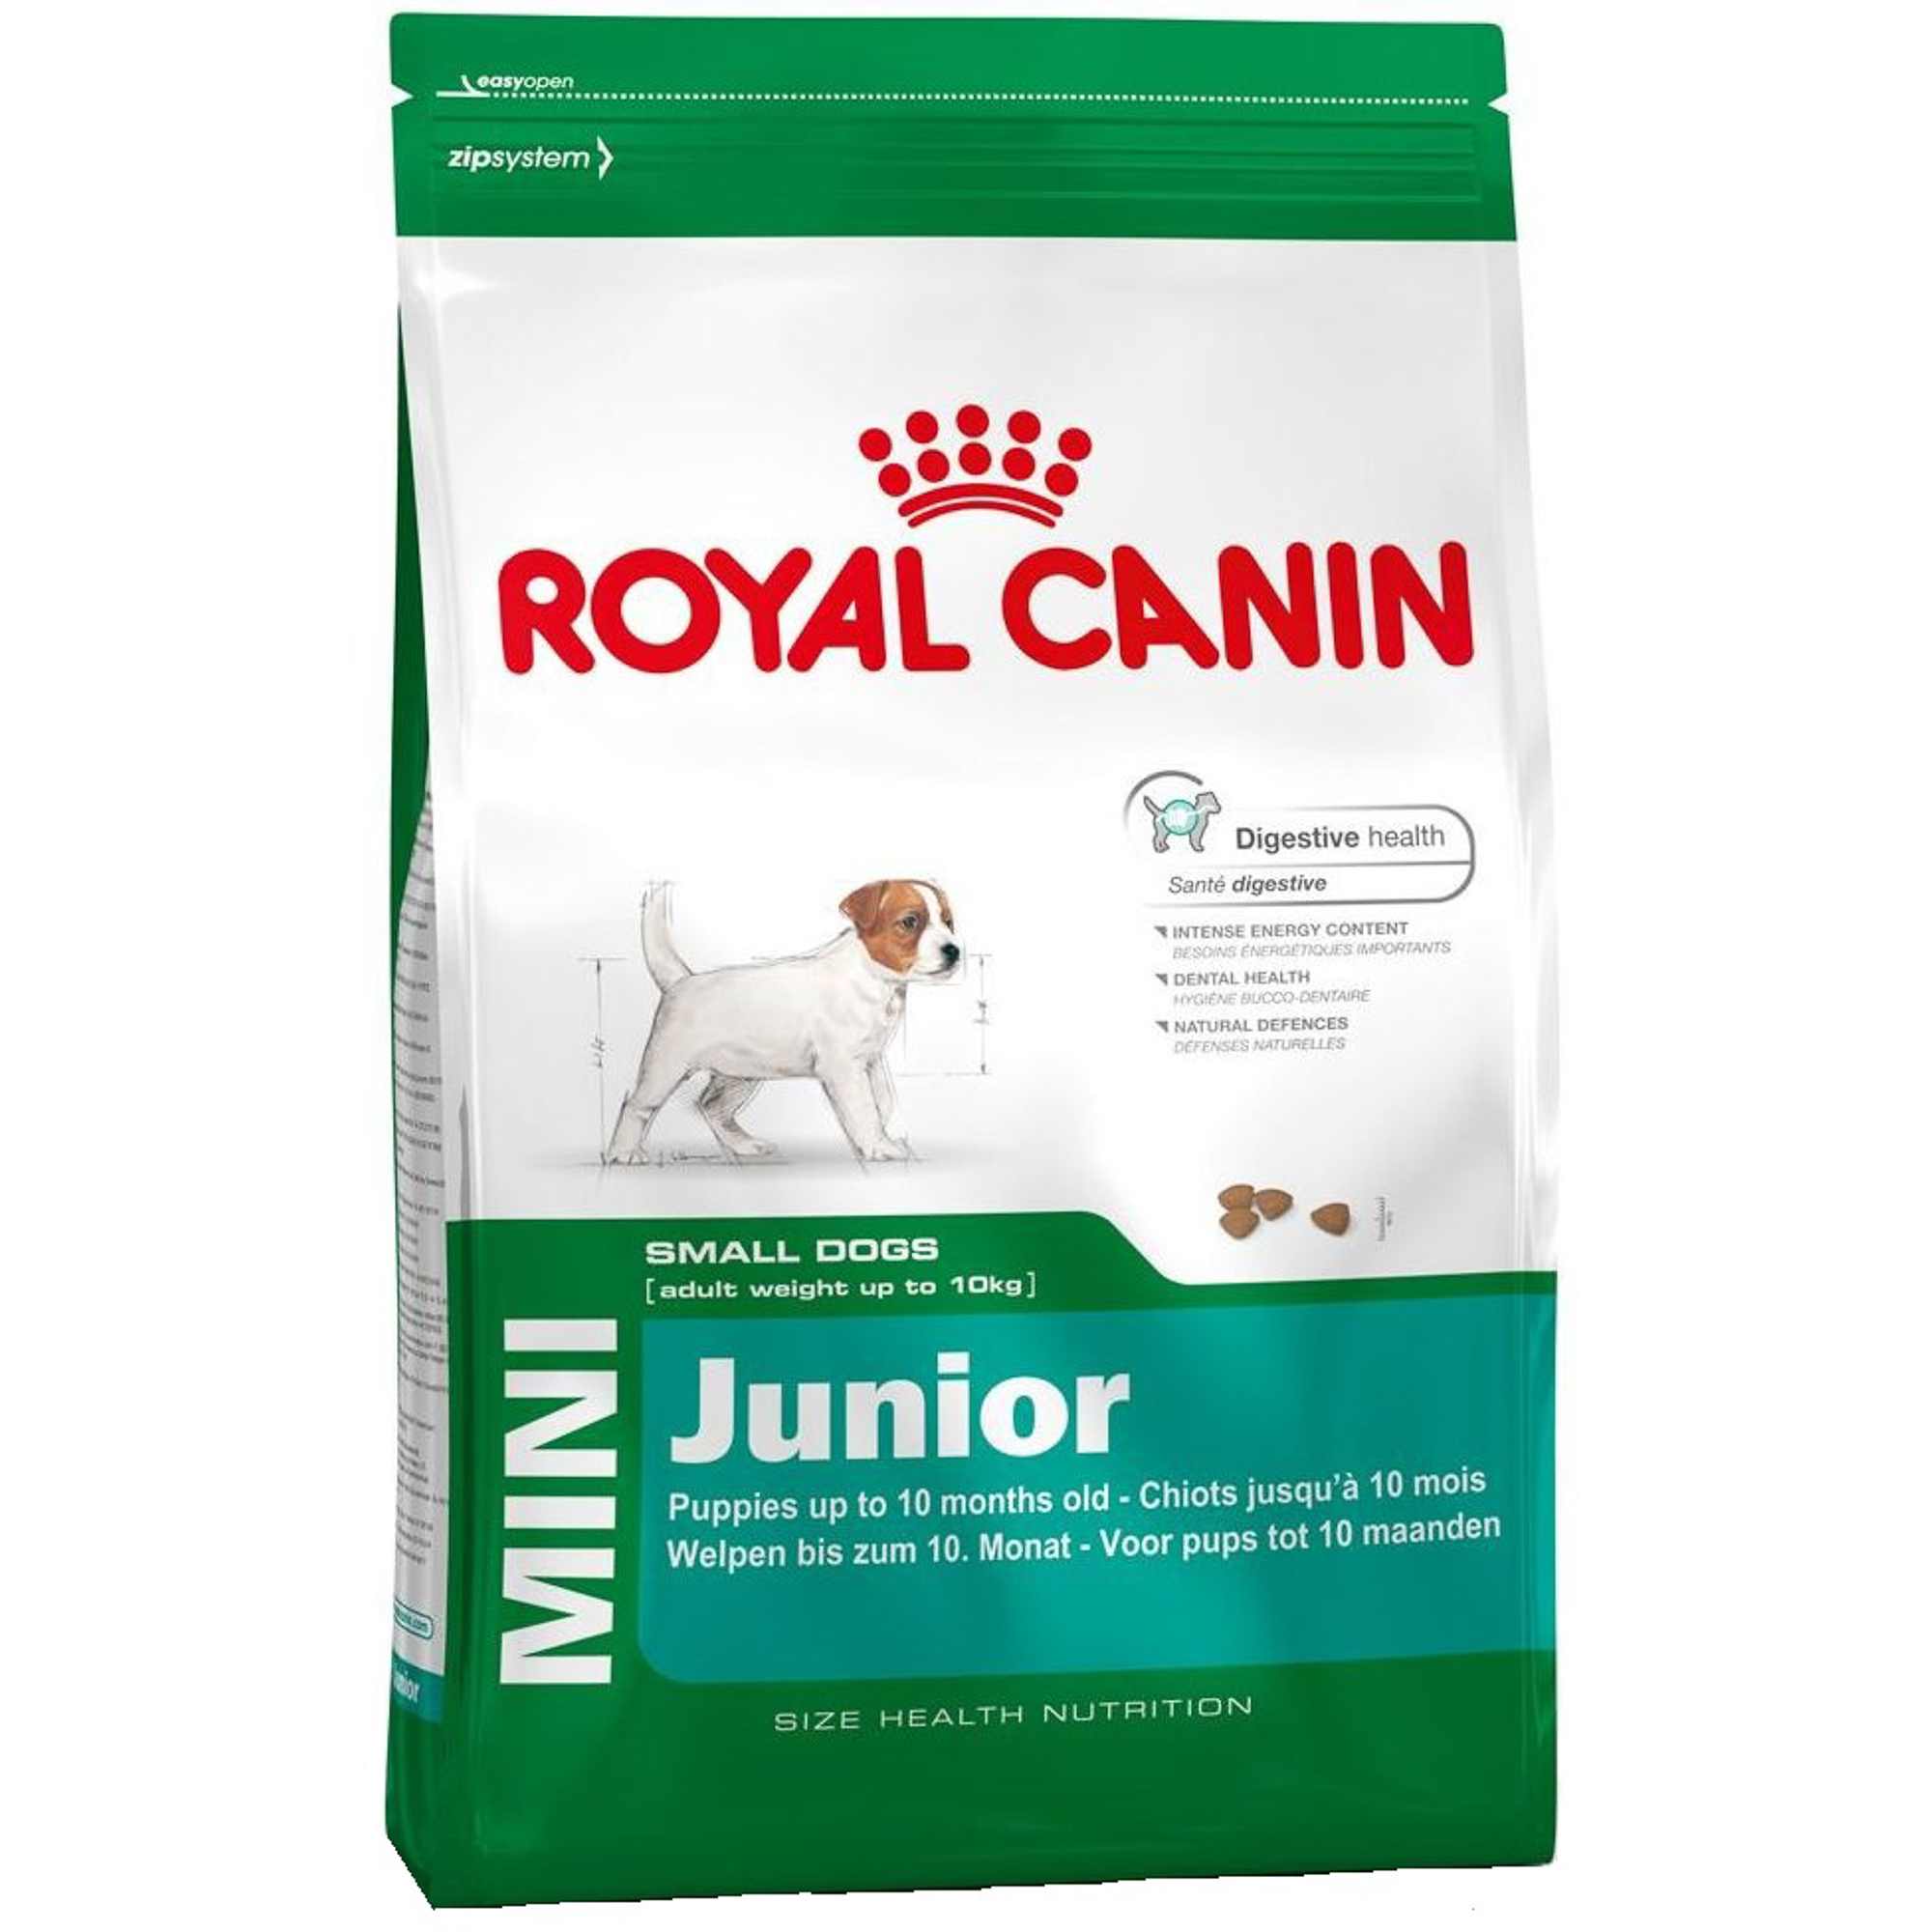 Купить корм royal canin для собак. Royal Canin мини Эдалт 0,8 кг. Макси Эдалт 15кг Royal Canin. Корм для собак Роял Канин макси Эдалт. Роял Канин Эдалт для собак мелких пород.